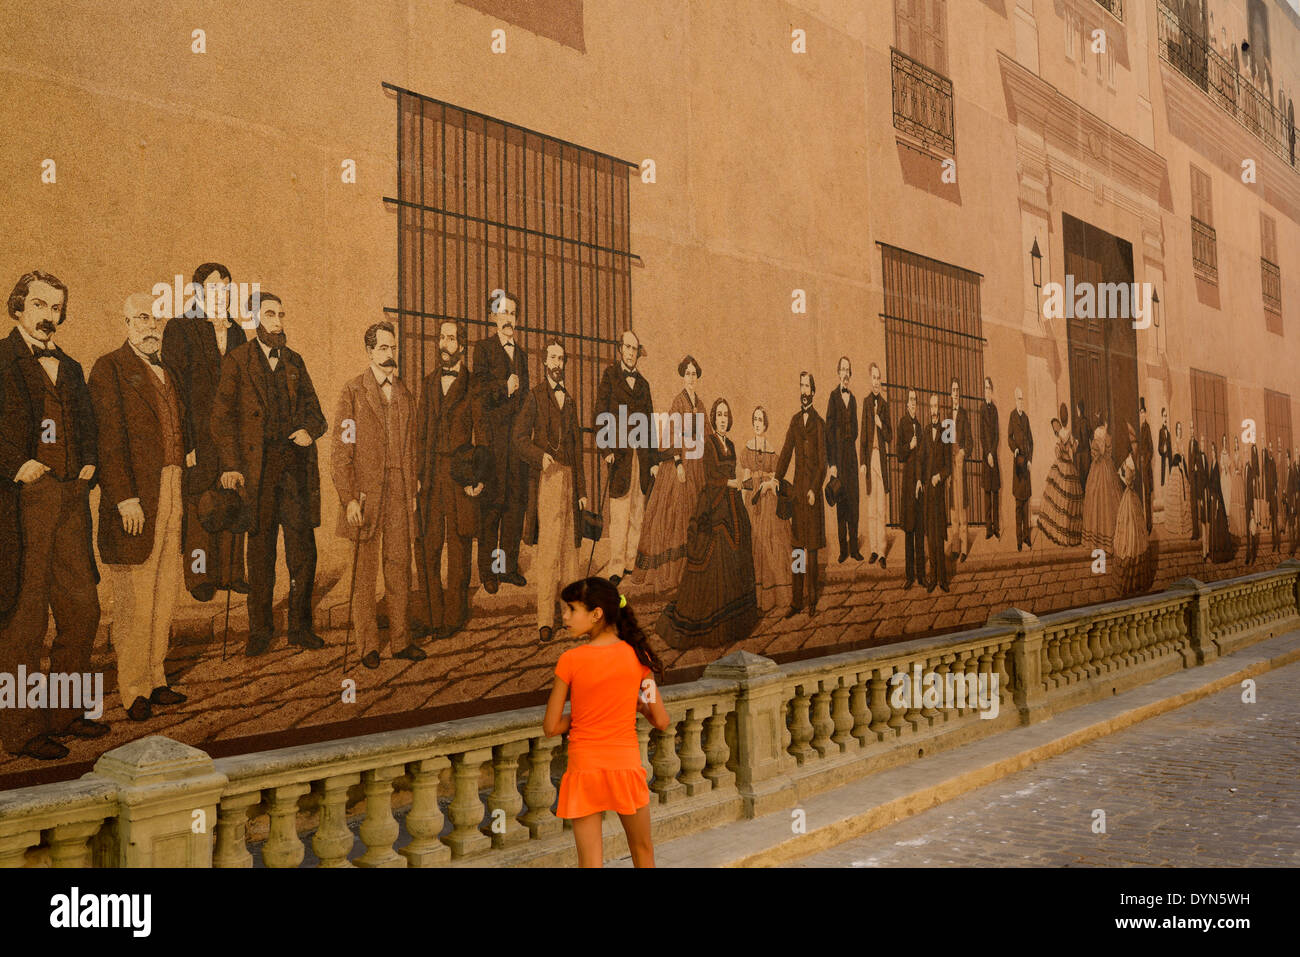 Giovane ragazza cubana in arancione a piedi da un dipinto murale di classe superiore intellettuali dell'epoca coloniale a l'Avana Vecchia Cuba Foto Stock